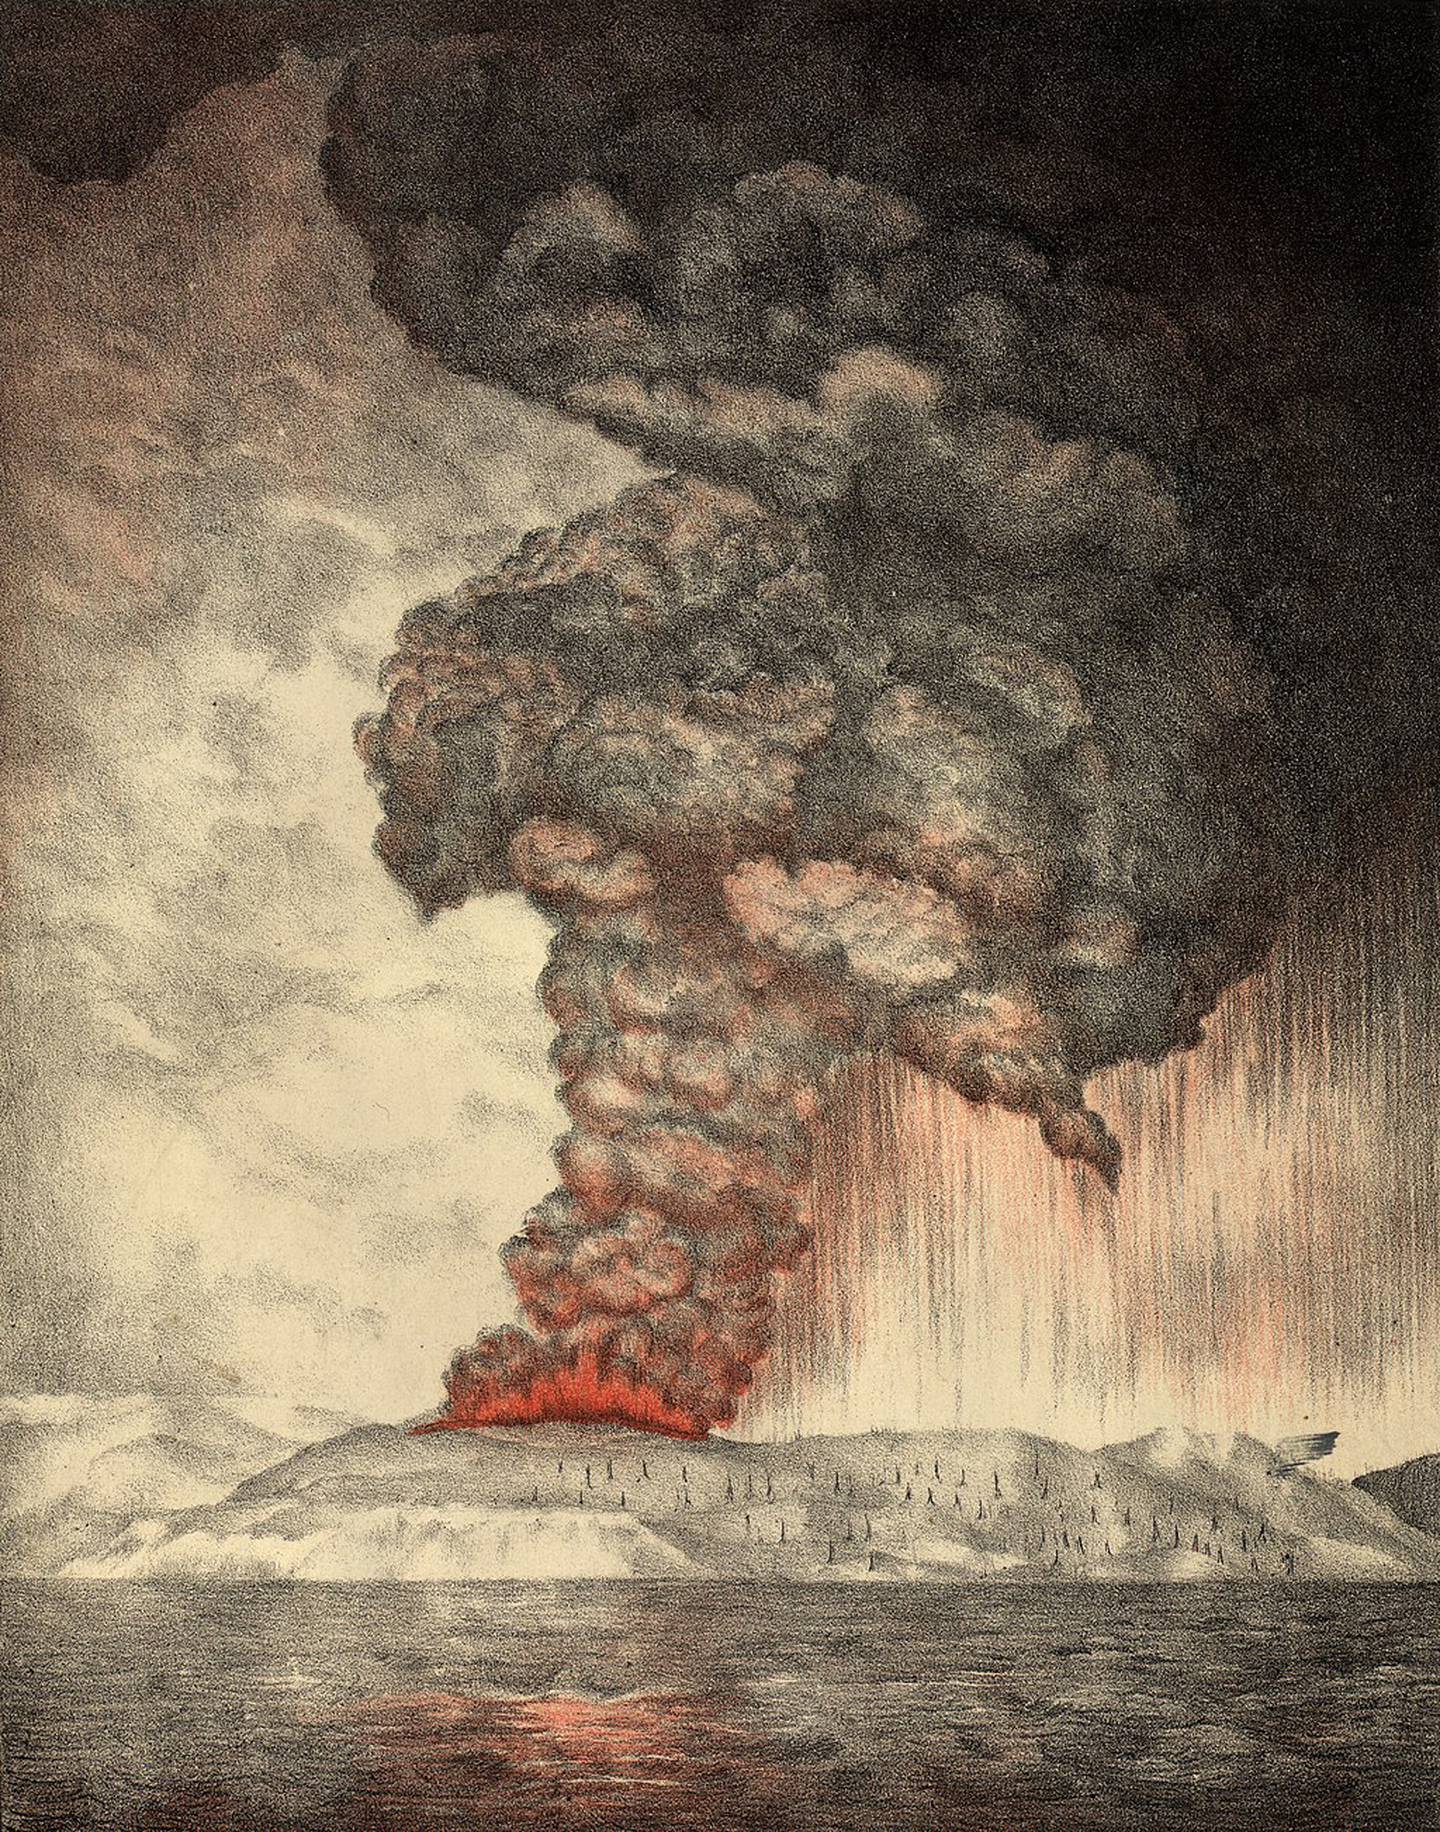 Litografi av Krakatoa-utbruddet i 1883, som forårsaket den blodrøde himmelen som Edvard Munch beskriver i sine dagbøker – og som mange mener er bakgrunn for de sterke rødfargene i Skrik.